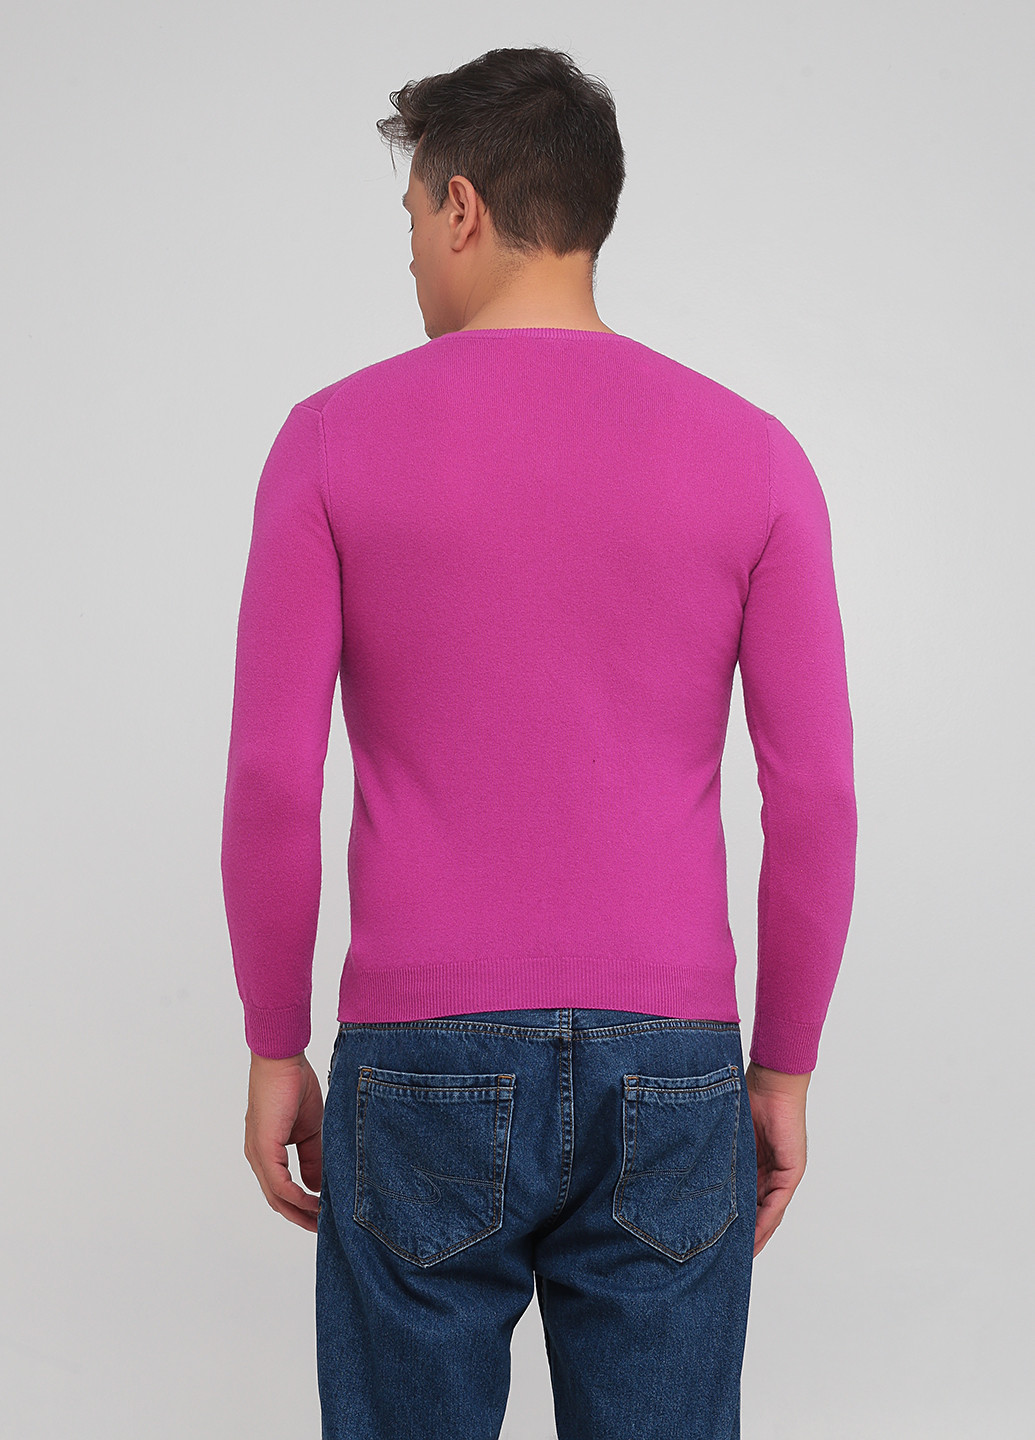 Фуксиновый демисезонный пуловер пуловер United Colors of Benetton